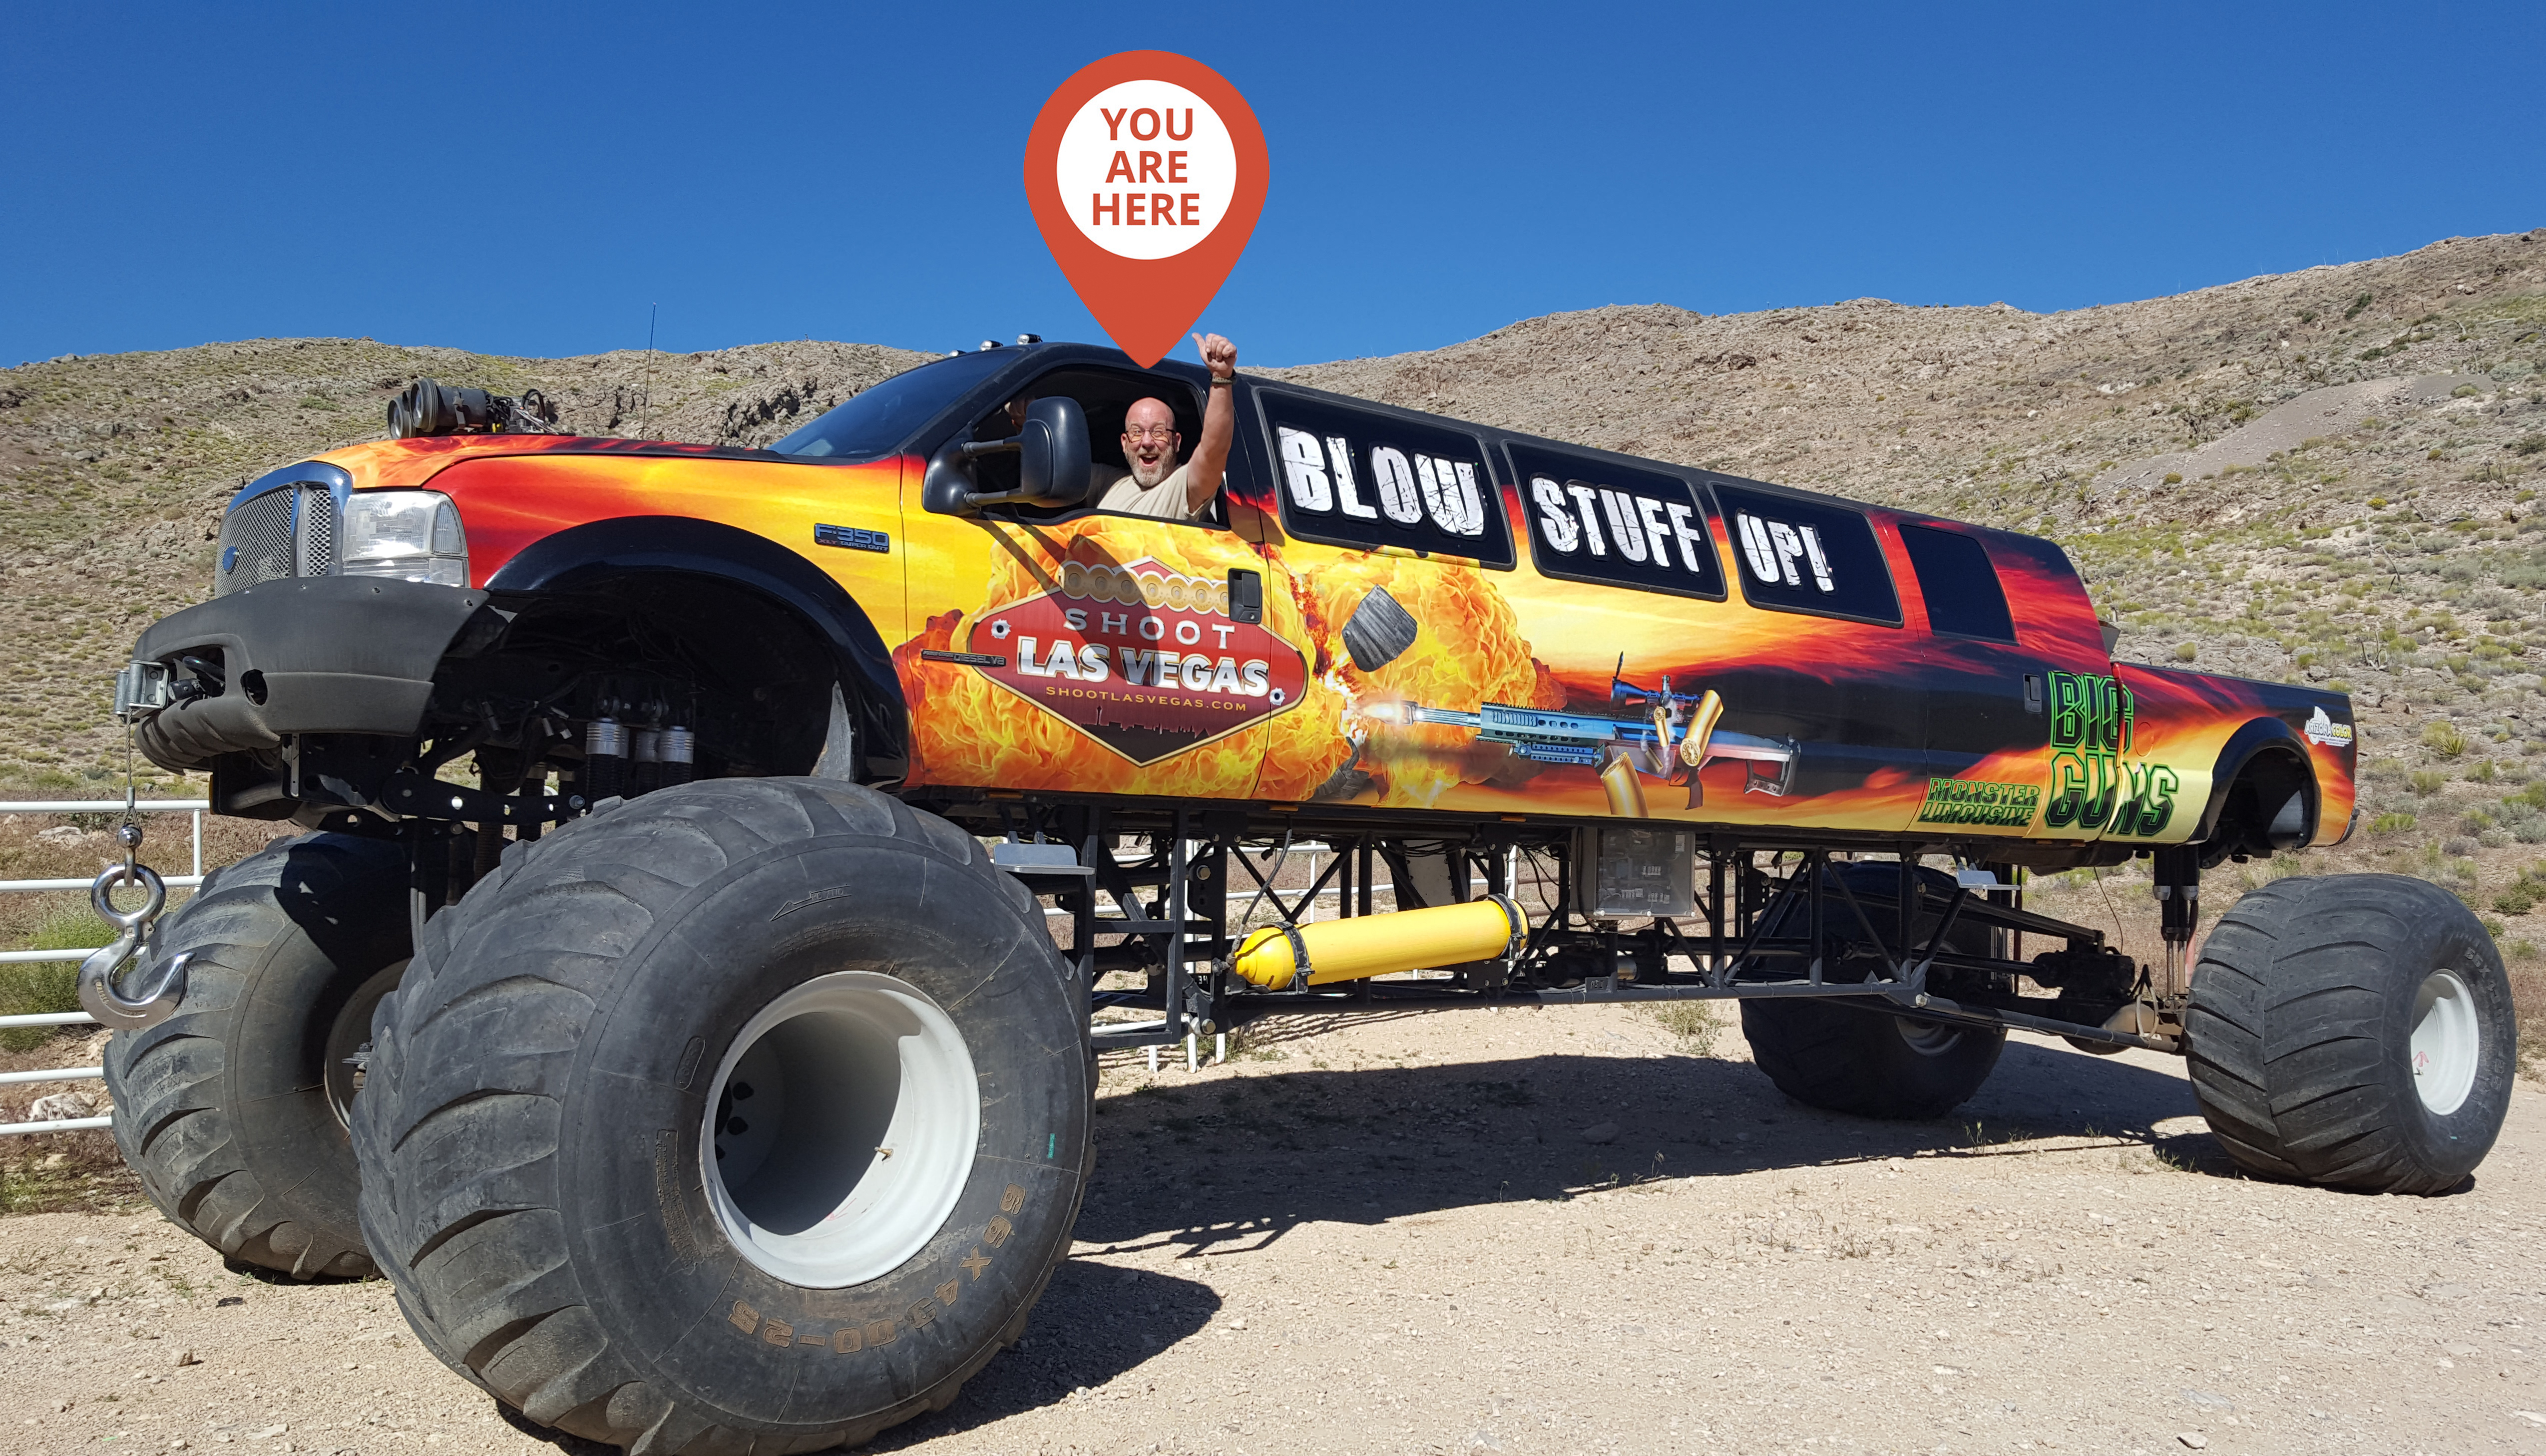 The World's Longest Monster Truck Throttles Onto The Trade Show Floor